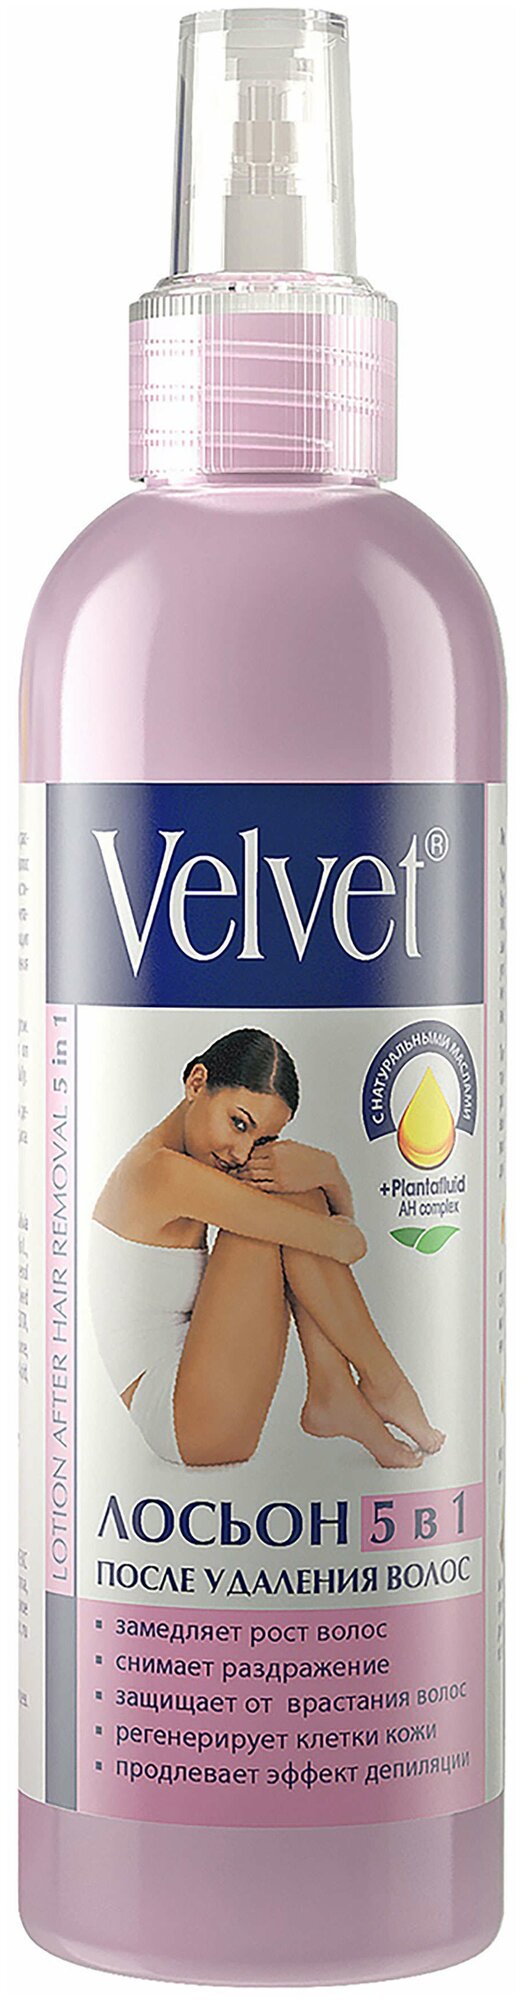 Velvet Лосьон 5 в 1 после удаления волос 200 мл - фотография № 10